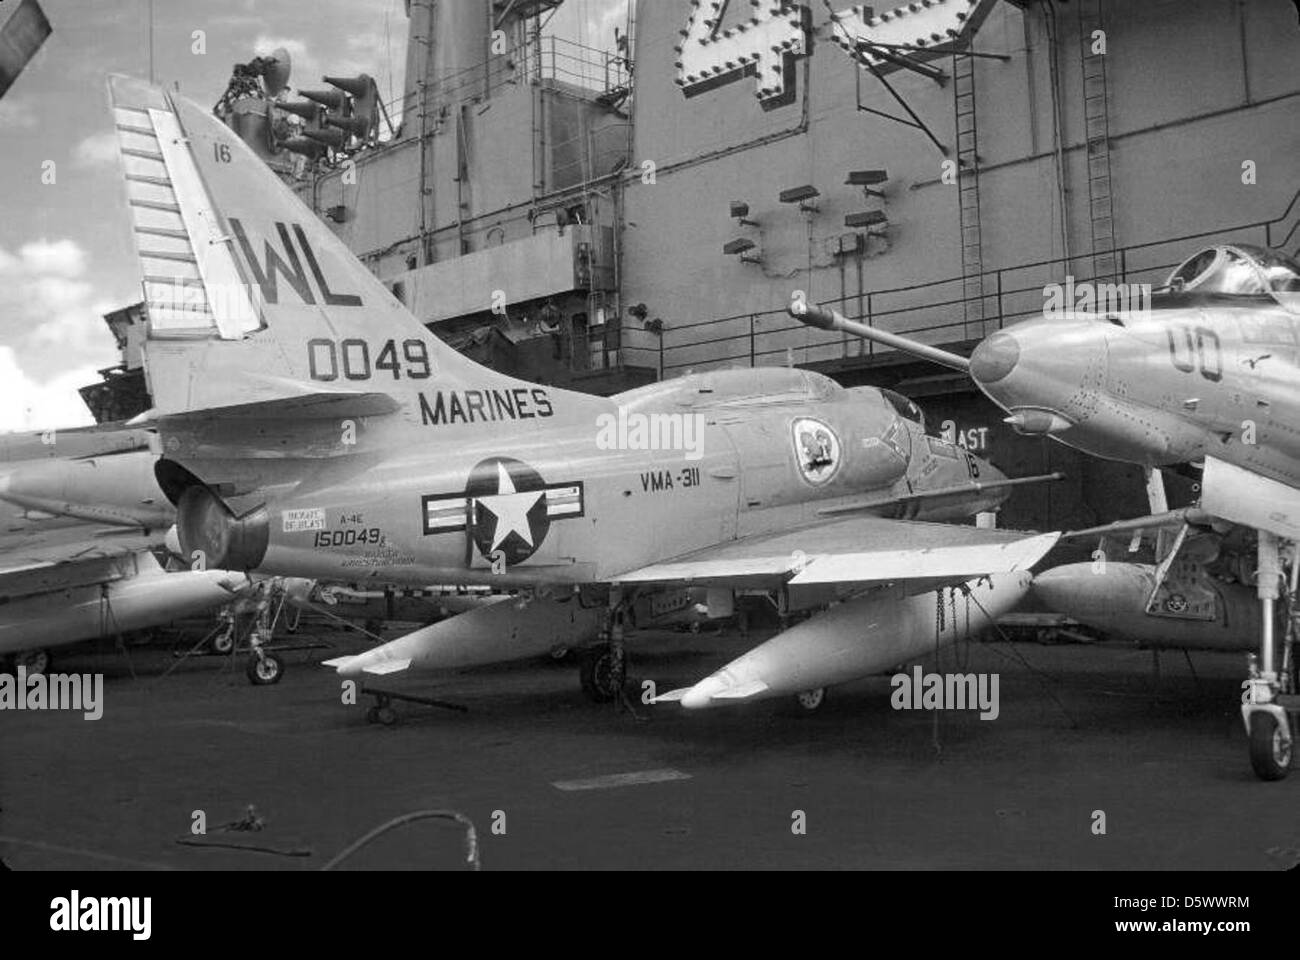 Douglas (A4D-5) A-4E 'Skyhawk' of Marine Attack Squadron VMA-311 'Tomcats' on the USS CORAL SEA (CVA-43) in 1973. Stock Photo